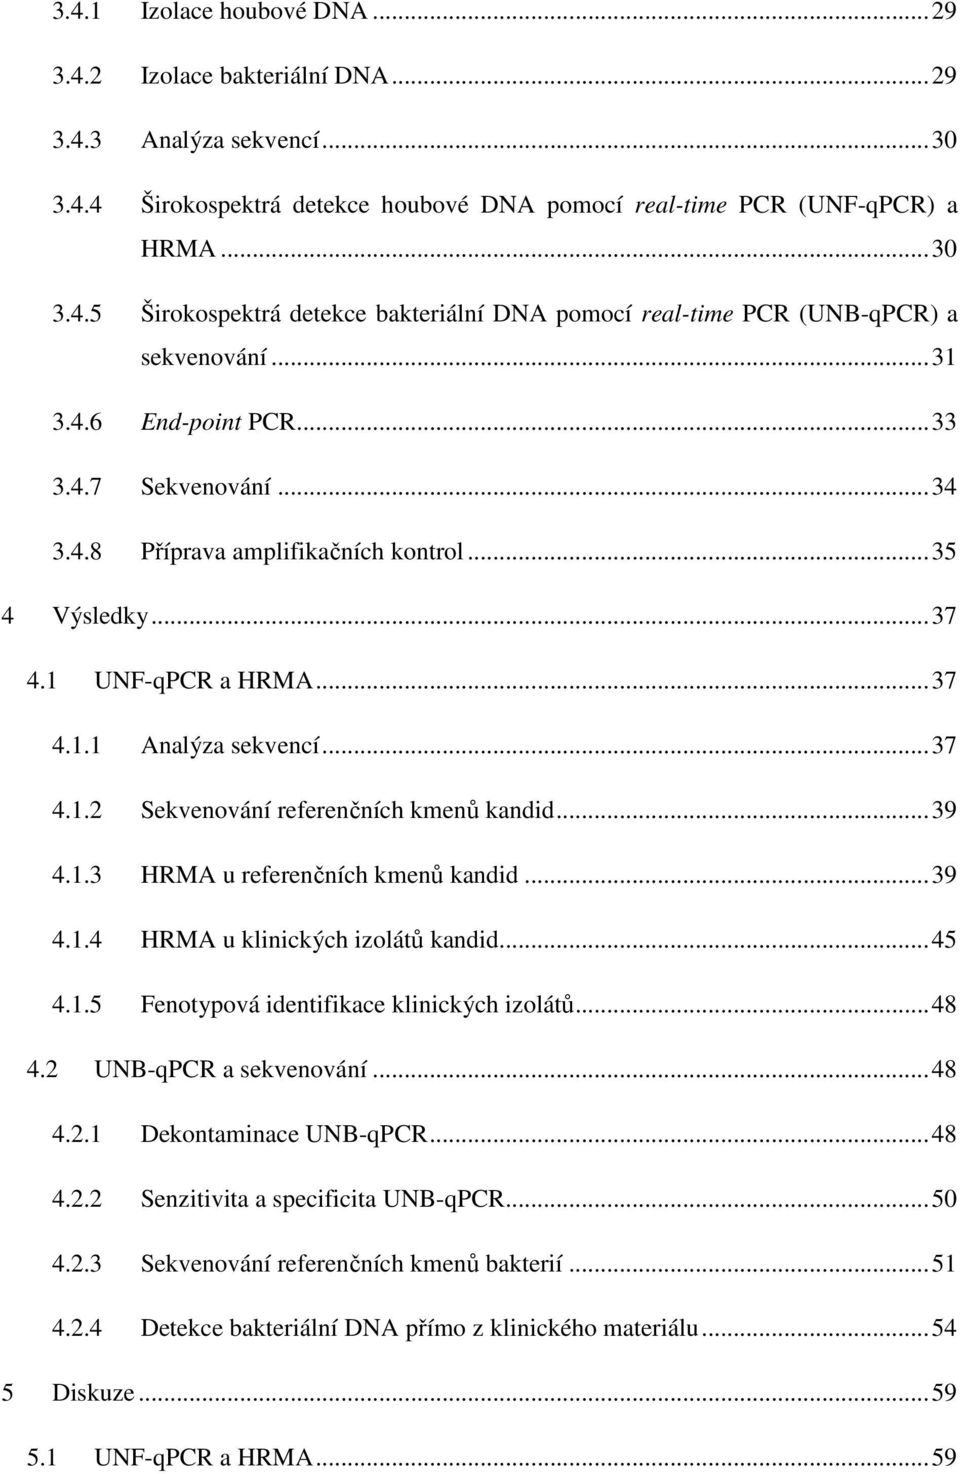 .. 39 4.1.3 HRMA u referenčních kmenů kandid... 39 4.1.4 HRMA u klinických izolátů kandid... 45 4.1.5 Fenotypová identifikace klinických izolátů... 48 4.2 UNB-qPCR a sekvenování... 48 4.2.1 Dekontaminace UNB-qPCR.